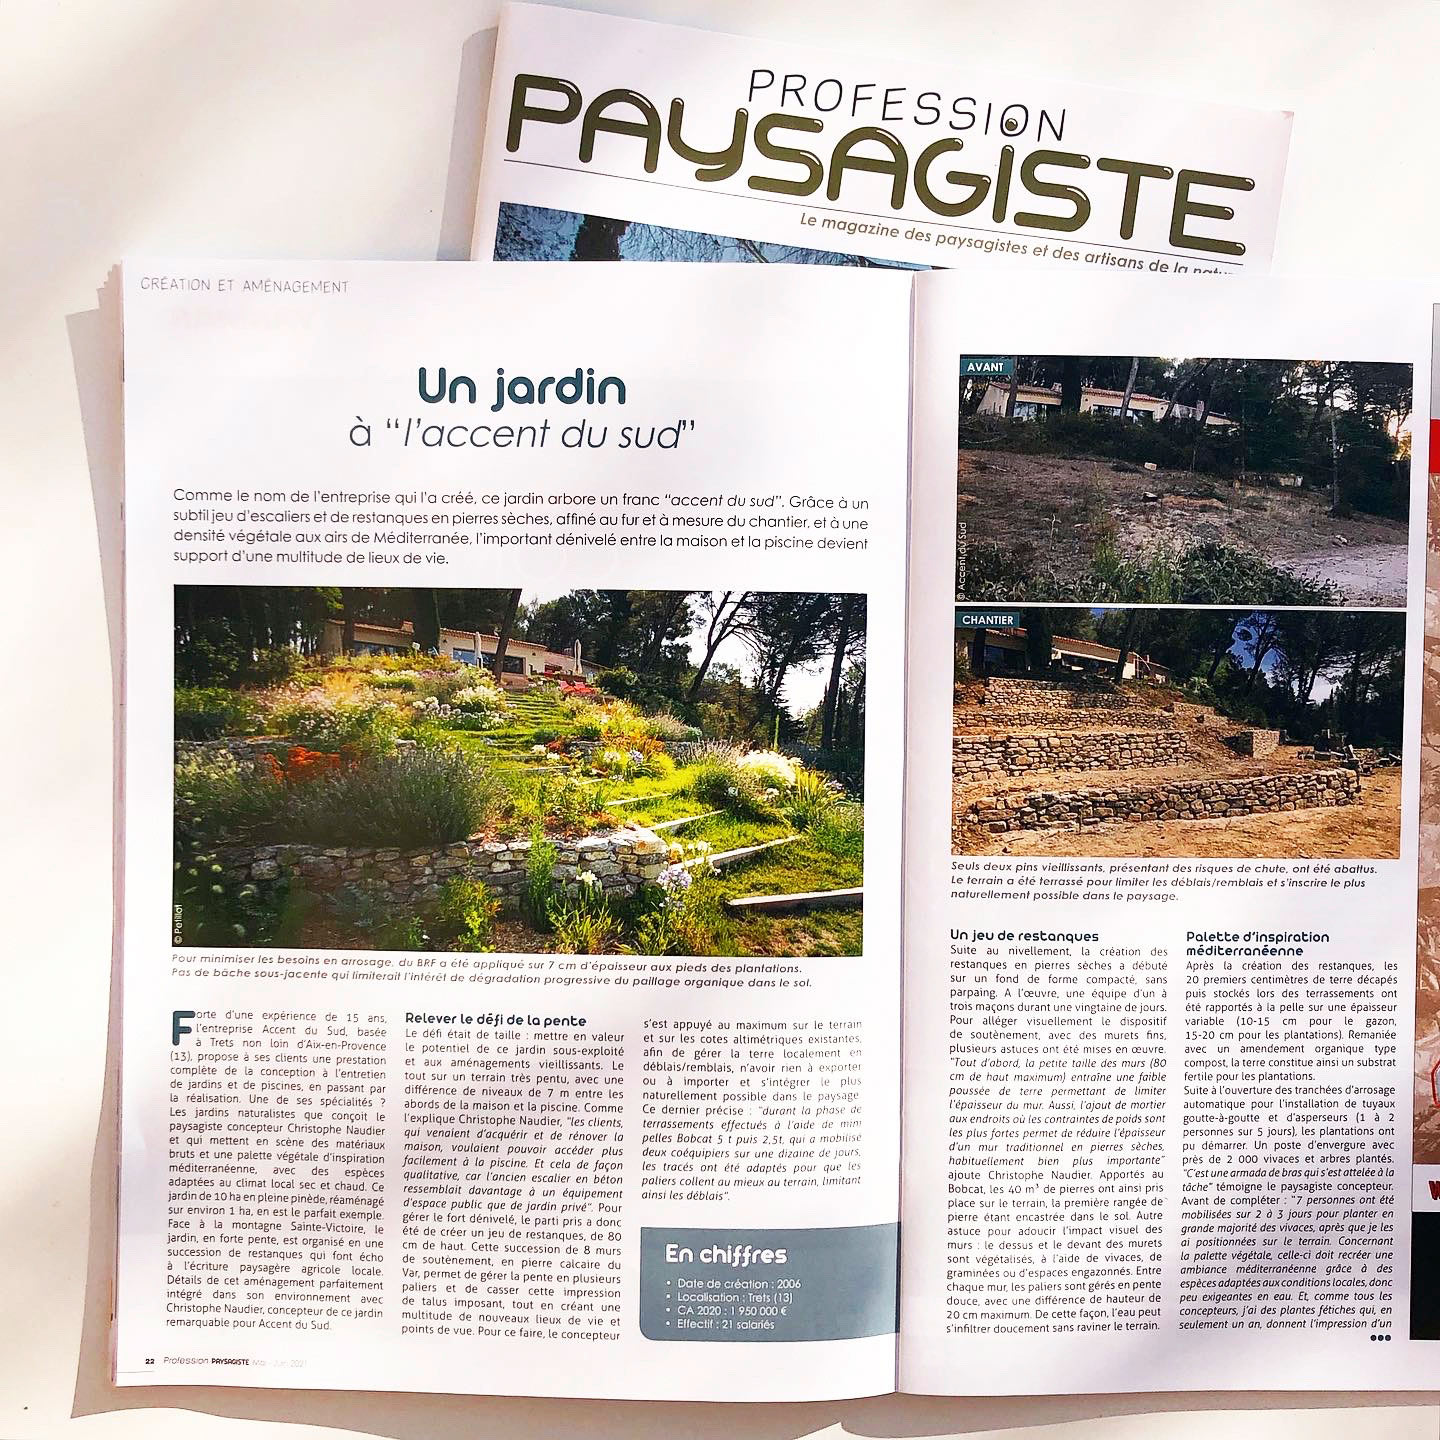 Atelier Naudier - Articles et reportages magazine - Profession Paysagiste 1 - Architecte Paysagiste Concepteur connu - Montpellier et Aix-en-Provence